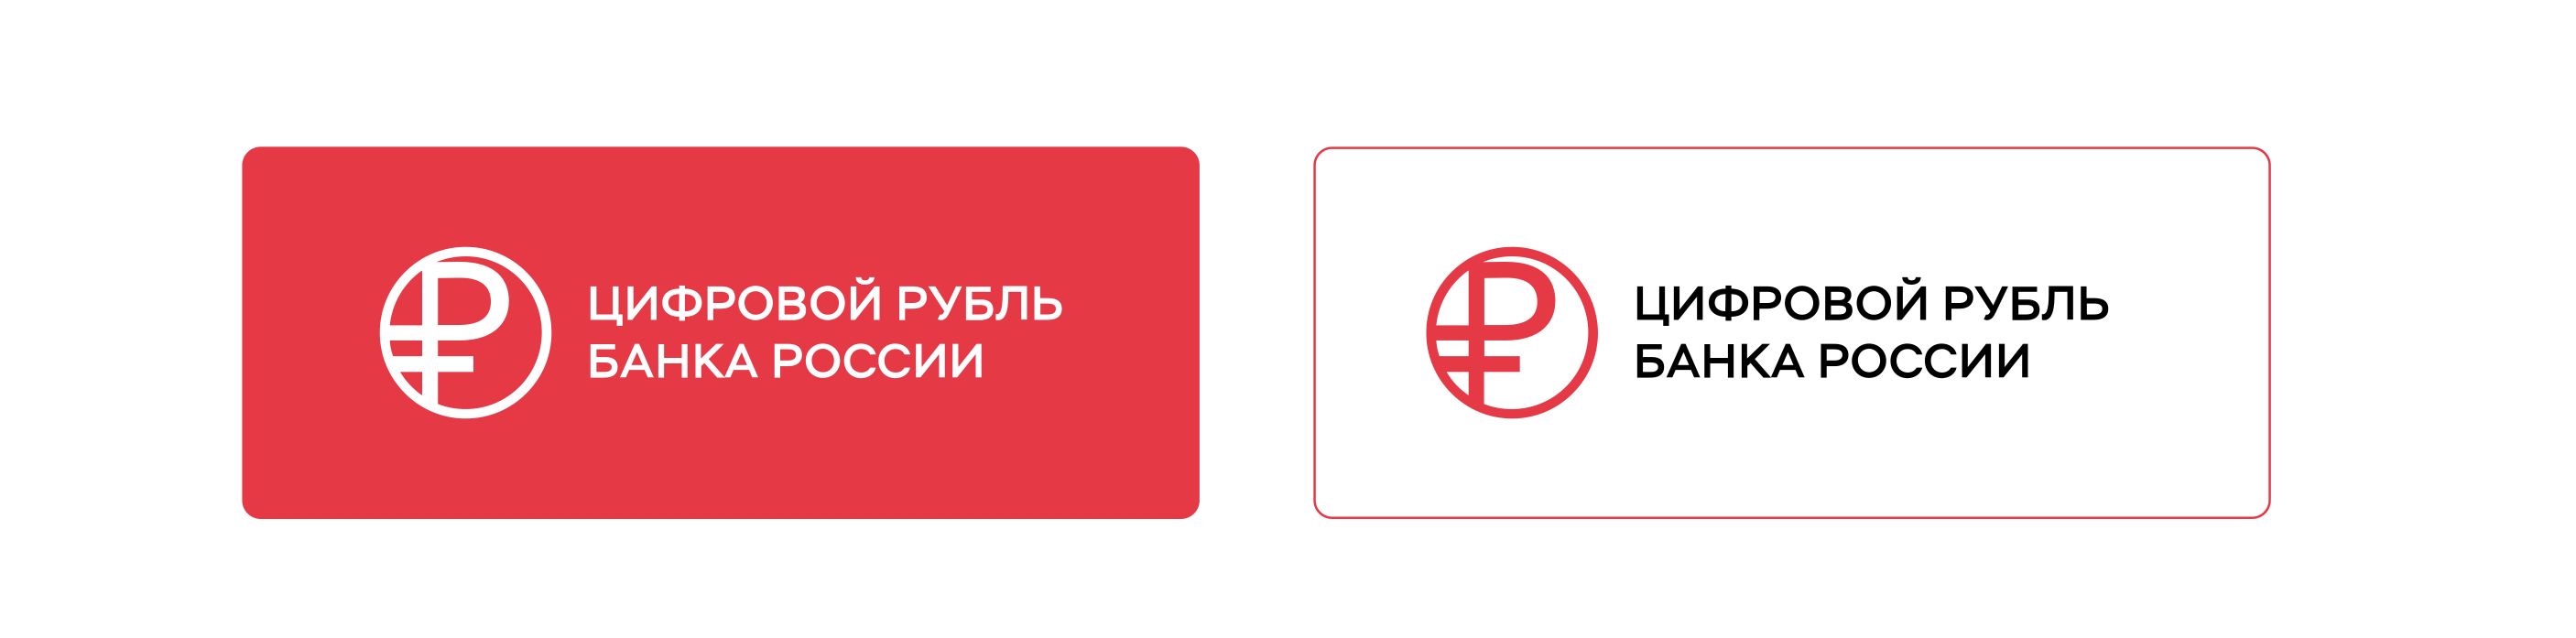 <p>Логотип цифрового рубля Банка России выполнен в виде окружности с вписанным в нее символом рубля. Фирменный кораллово-алый&nbsp;цвет&nbsp;используется как основной цвет фона для логотипа</p>